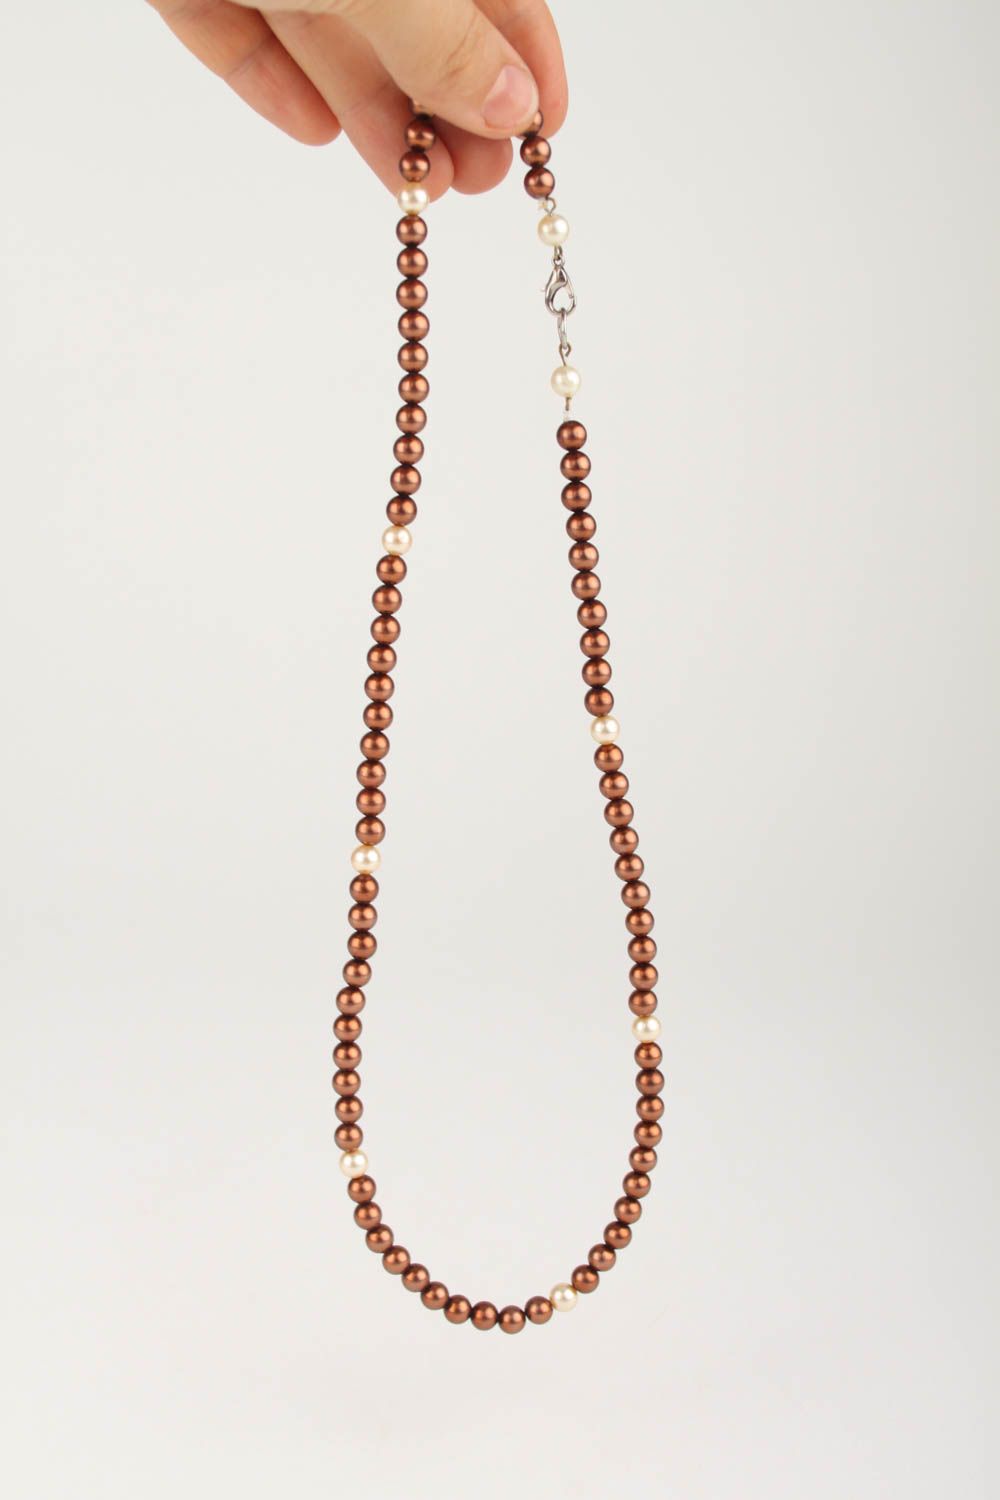 Handmade feminine beaded necklace unusual stylish necklace elegant jewelry photo 4